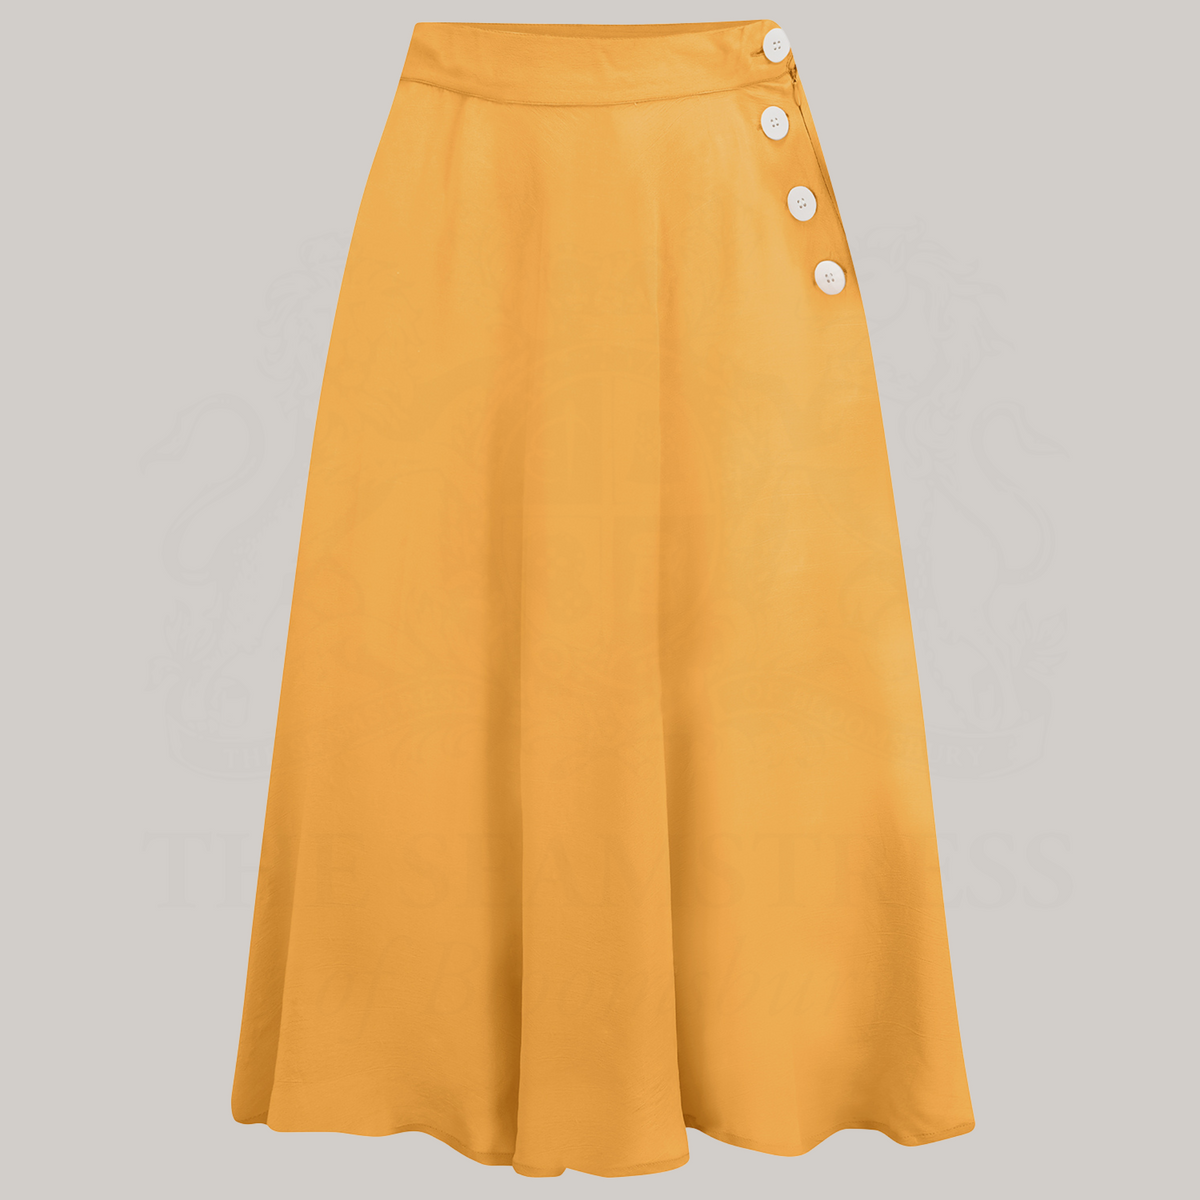 Isabelle Skirt in Mustard